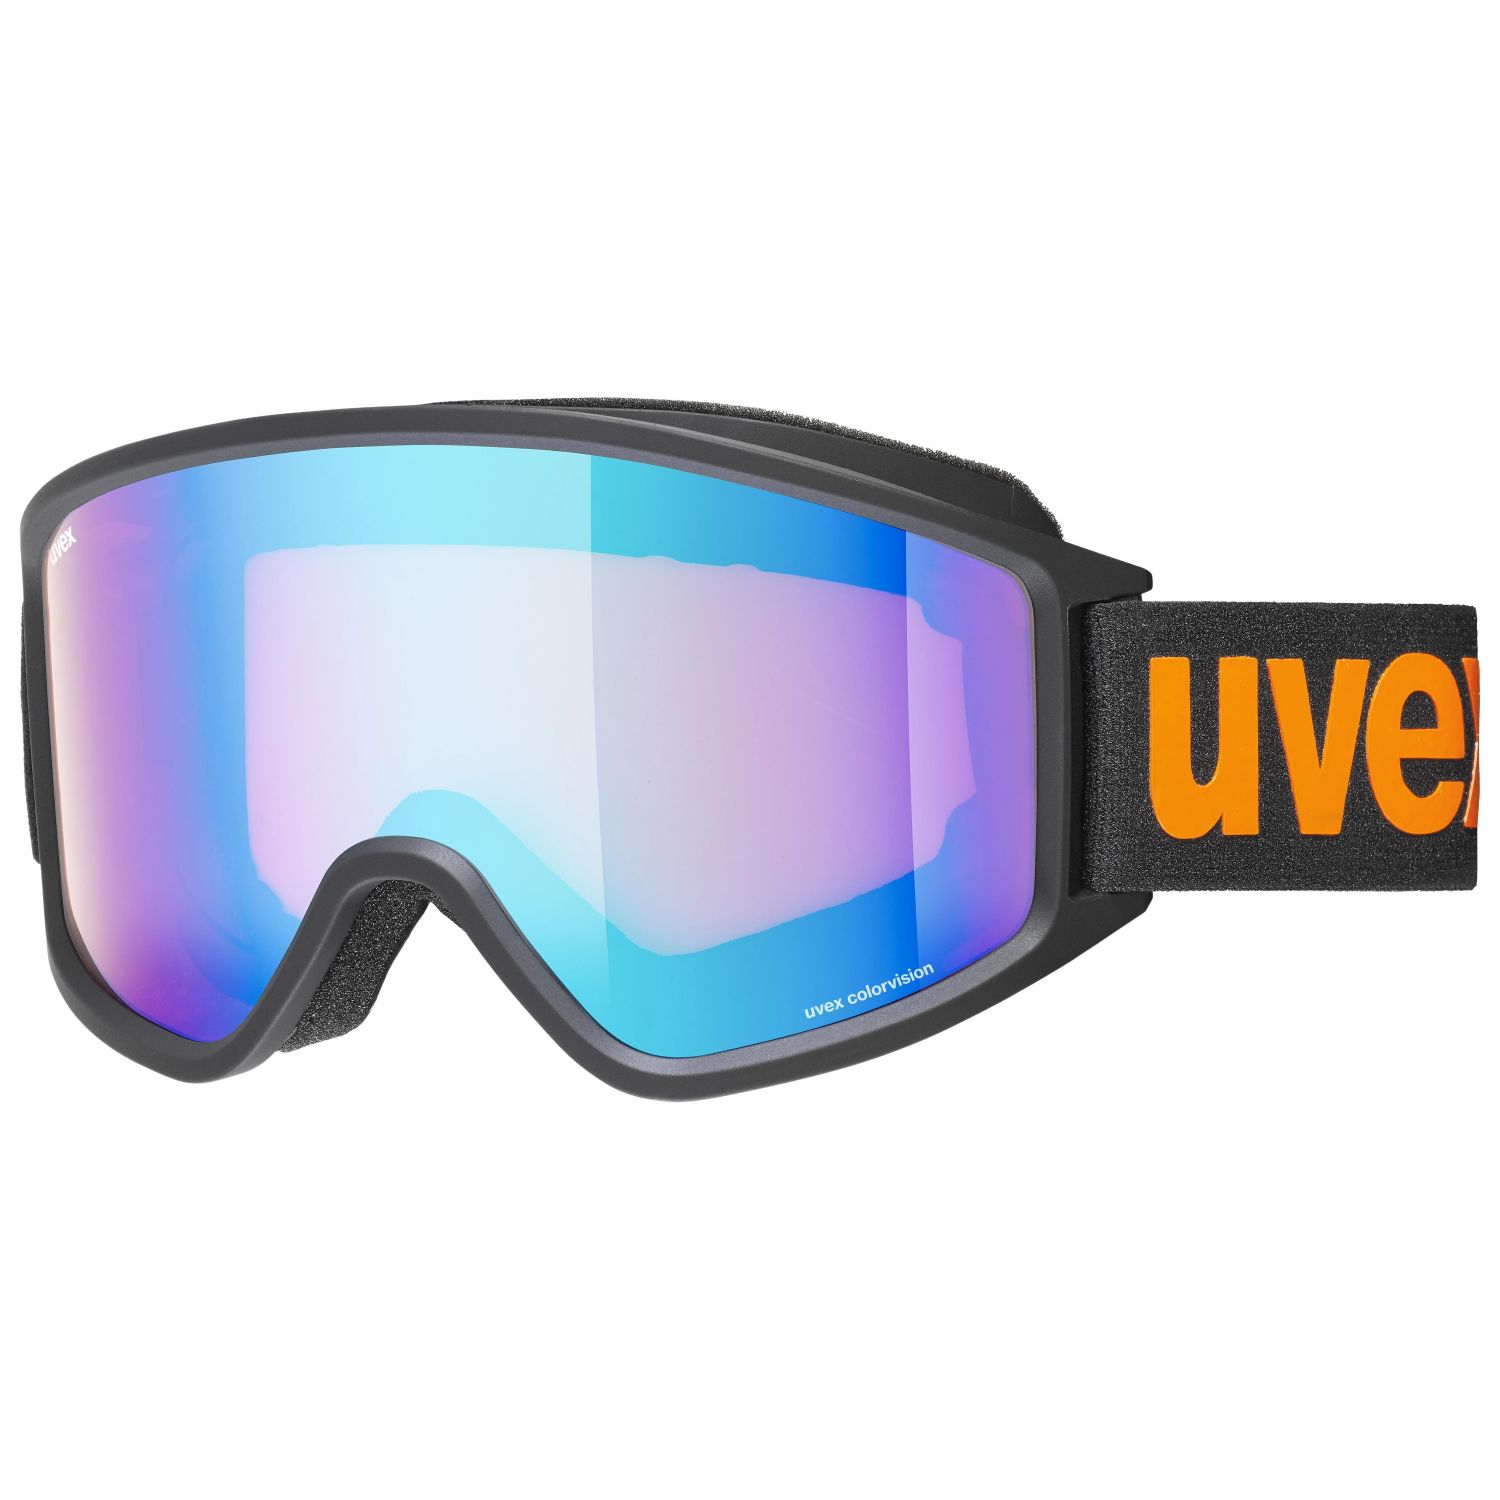 Uvex g.gl. 3000 CV, hiihtolasit, musta/oranssi